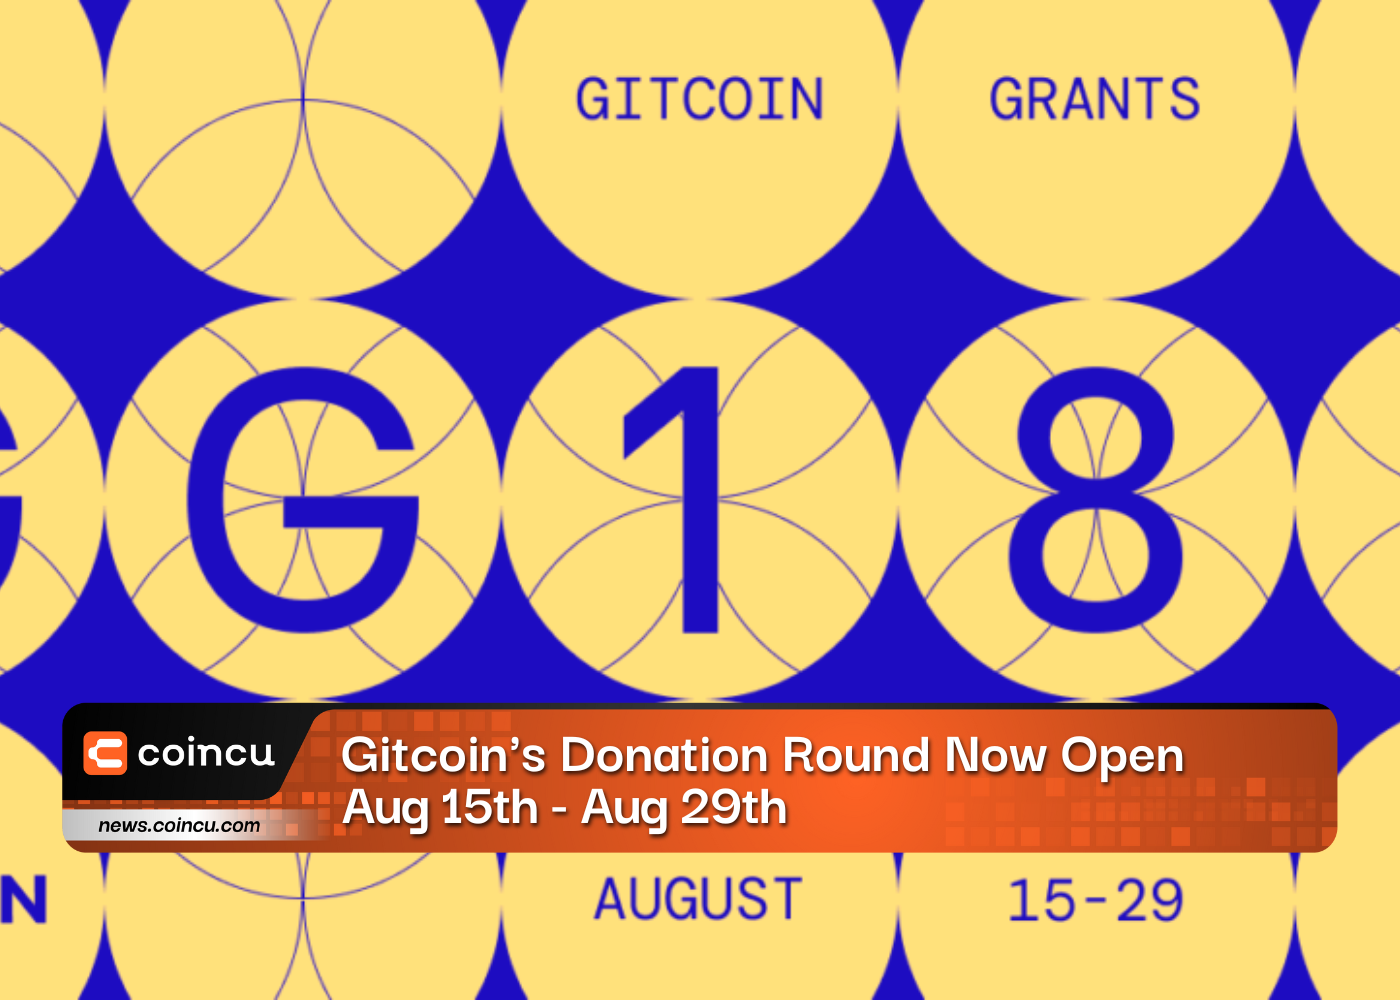 Rodada de doação de Gitcoins agora aberta